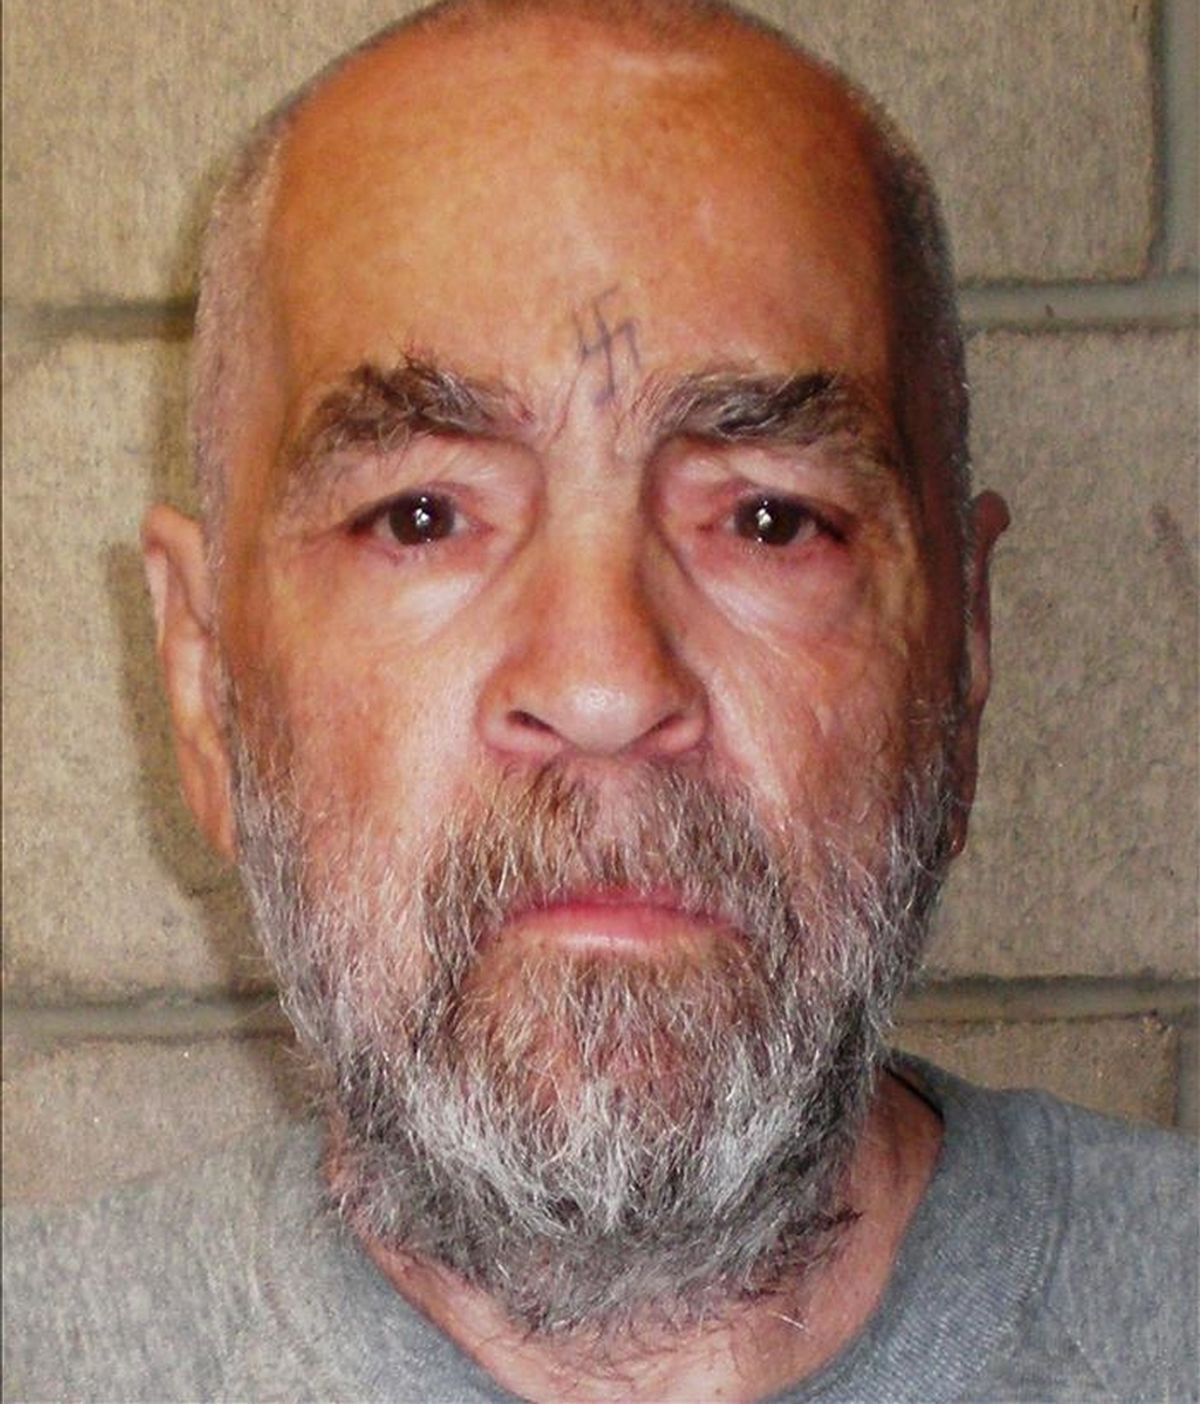 Fotografía facilitada por el Departamento de Corrección y Rehabilitación de California que muestra al asesino Charles Manson en una imagen del 18 de marzo de 2009. EFE/Archivo